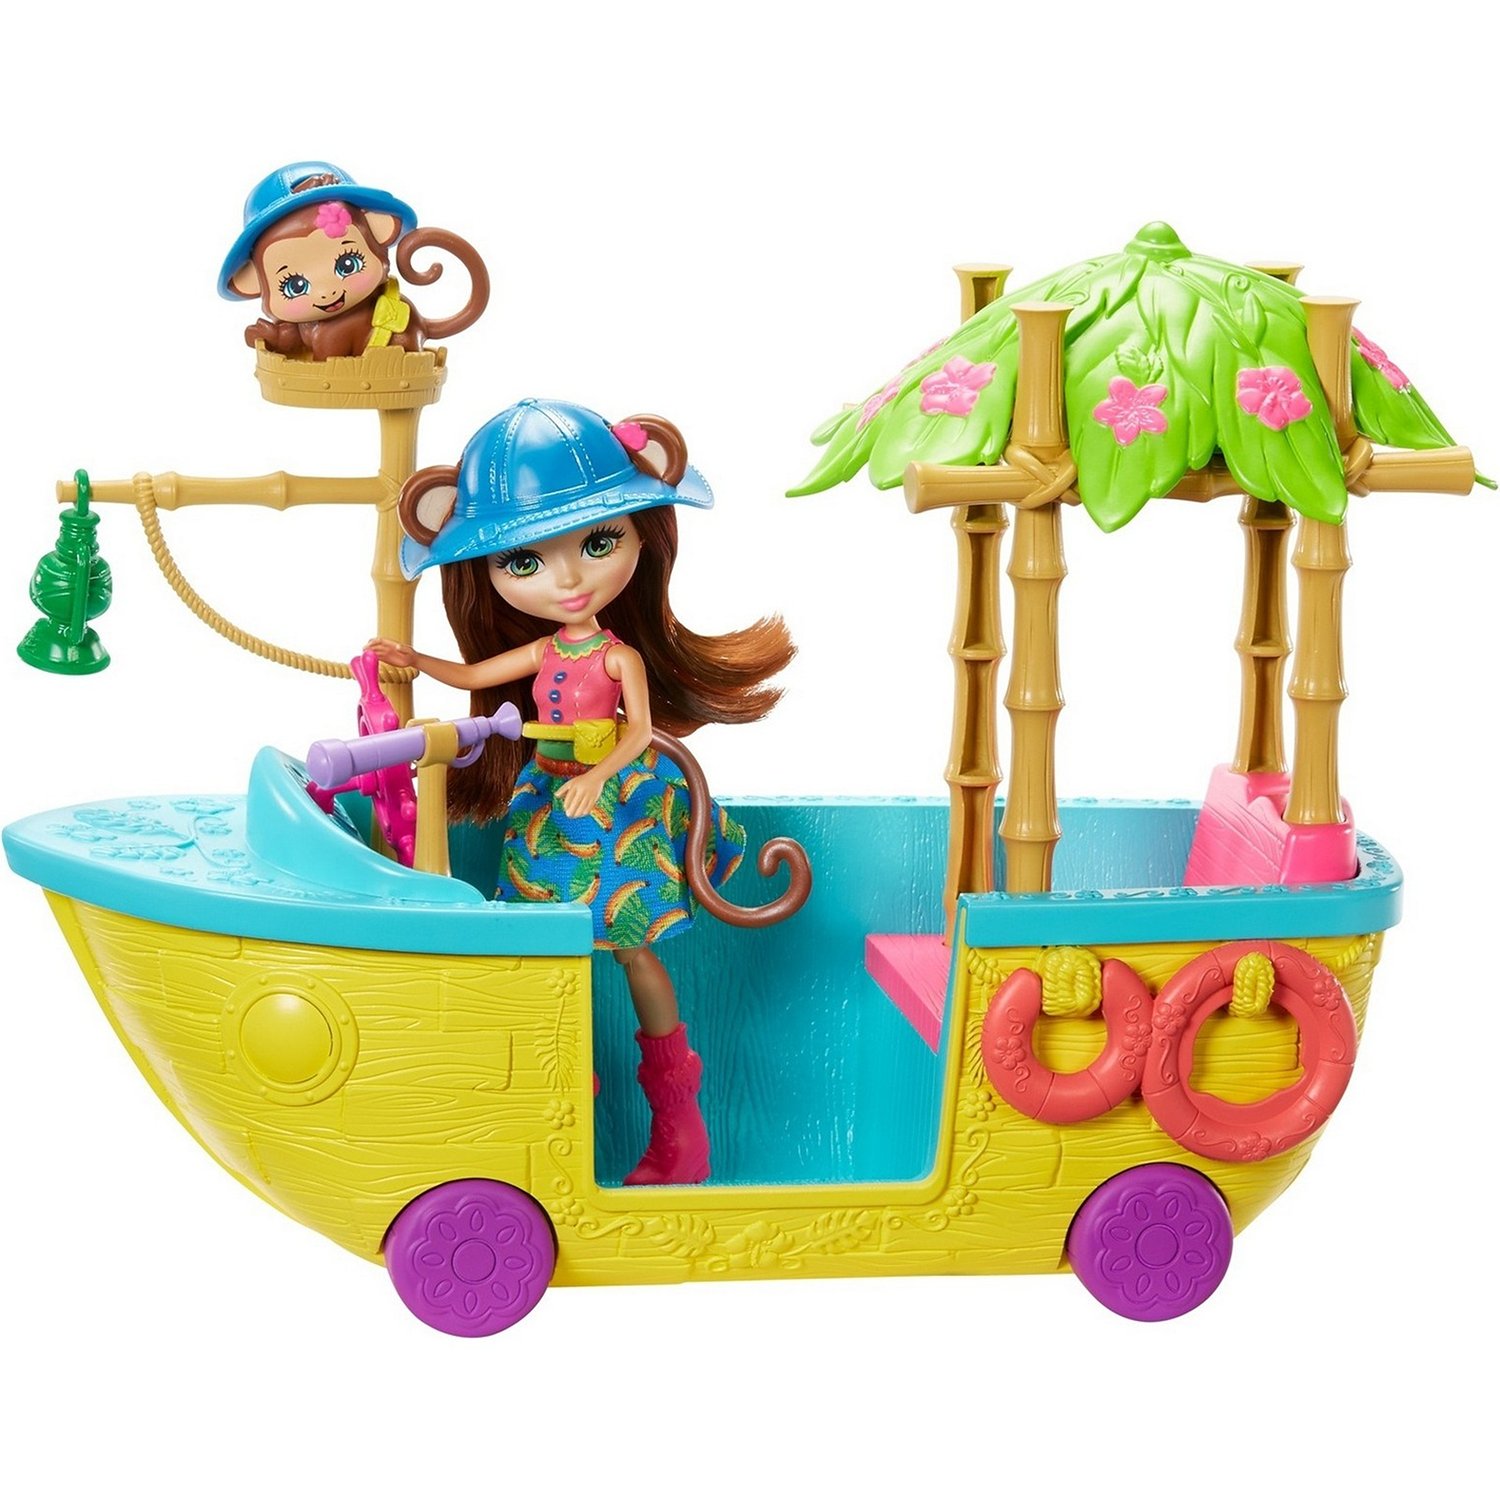 Корабль обезьян. Игровой набор Mattel Enchantimals - джунгли-лодка gfn58. Набор Enchantimals джунгли-лодка мерит Мартыша, gfn58. Энчантималс обезьянка джунгли лодка. Энчантималс лодка.